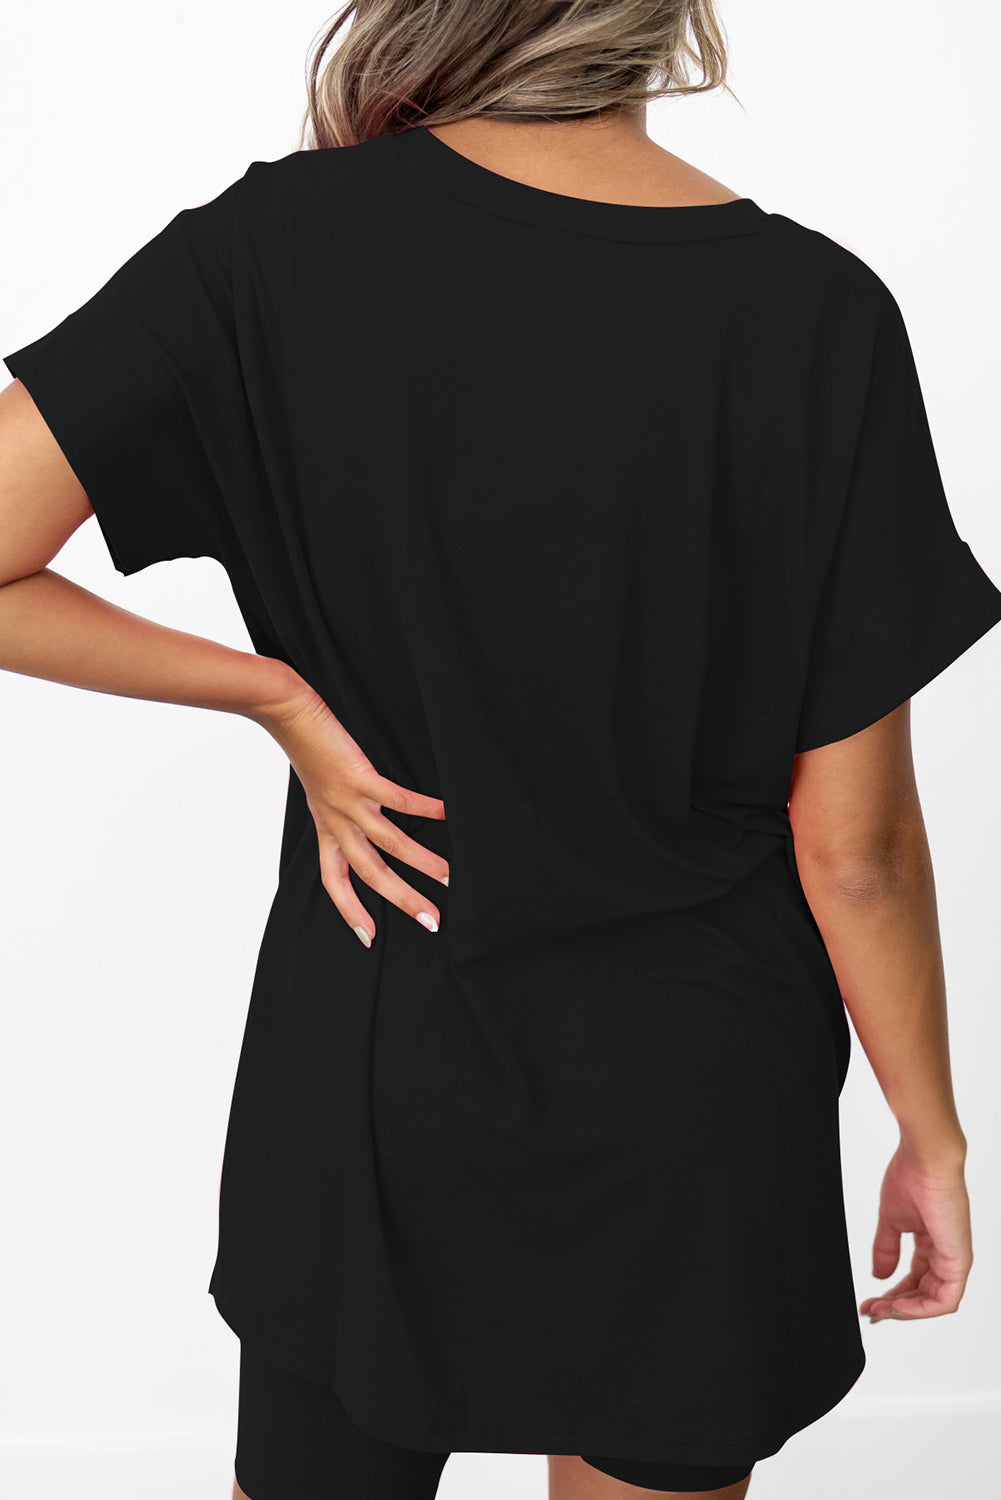 Schwarzes Set mit einfarbigem Tunika-T-Shirt und engen Shorts mit geteiltem Saum